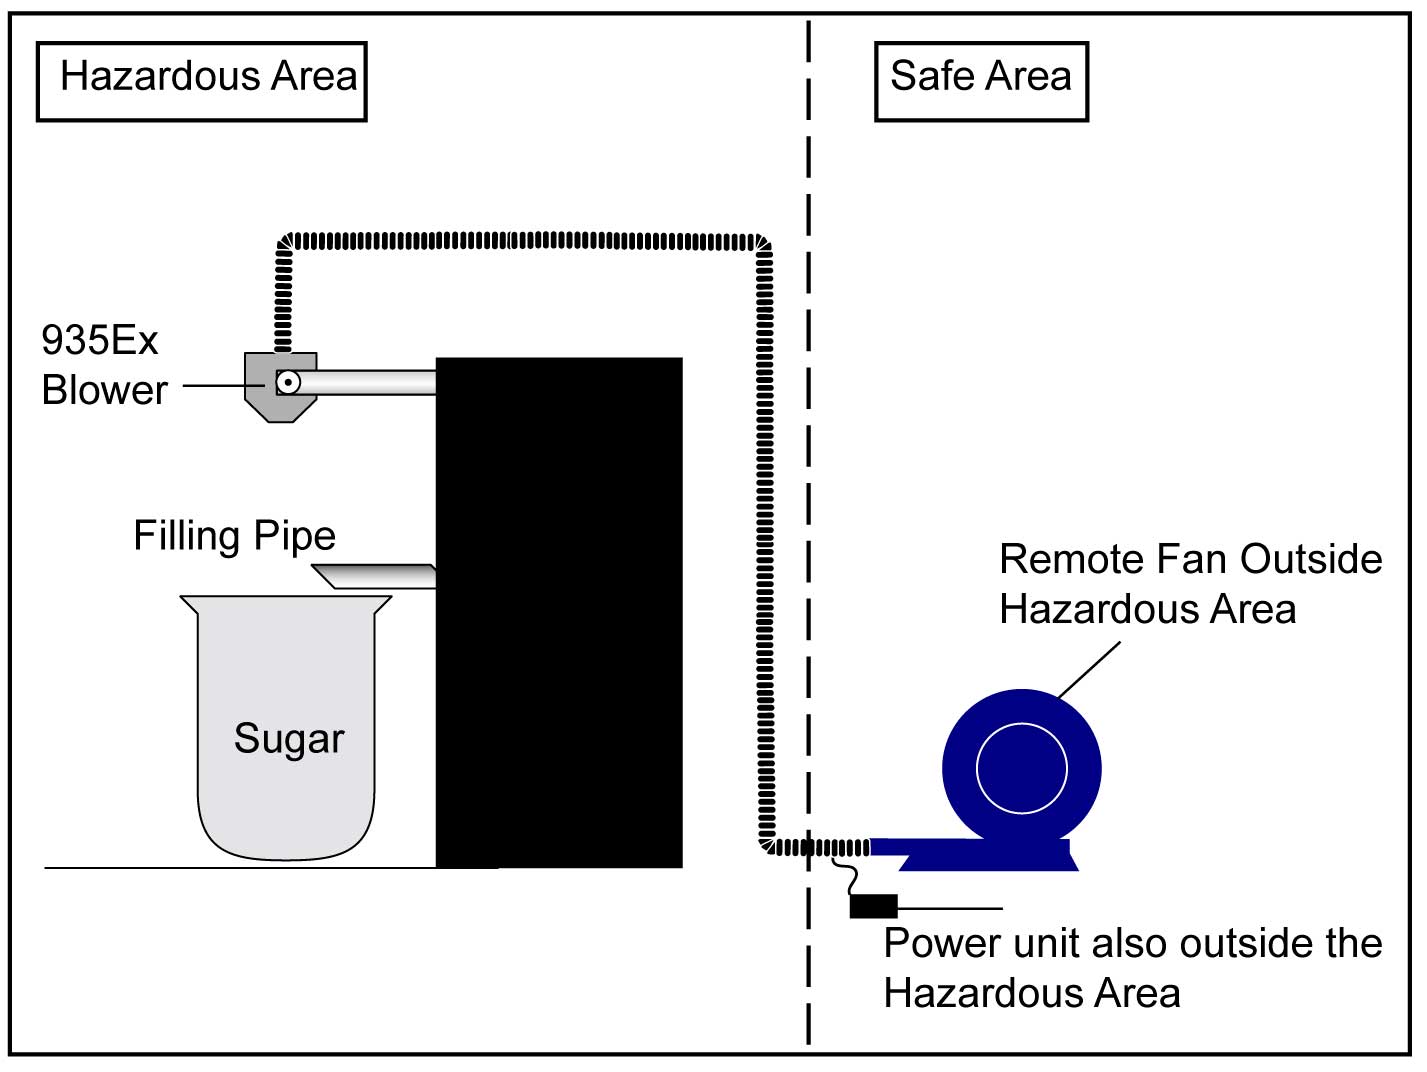 砂糖加工过程防止火灾隐患